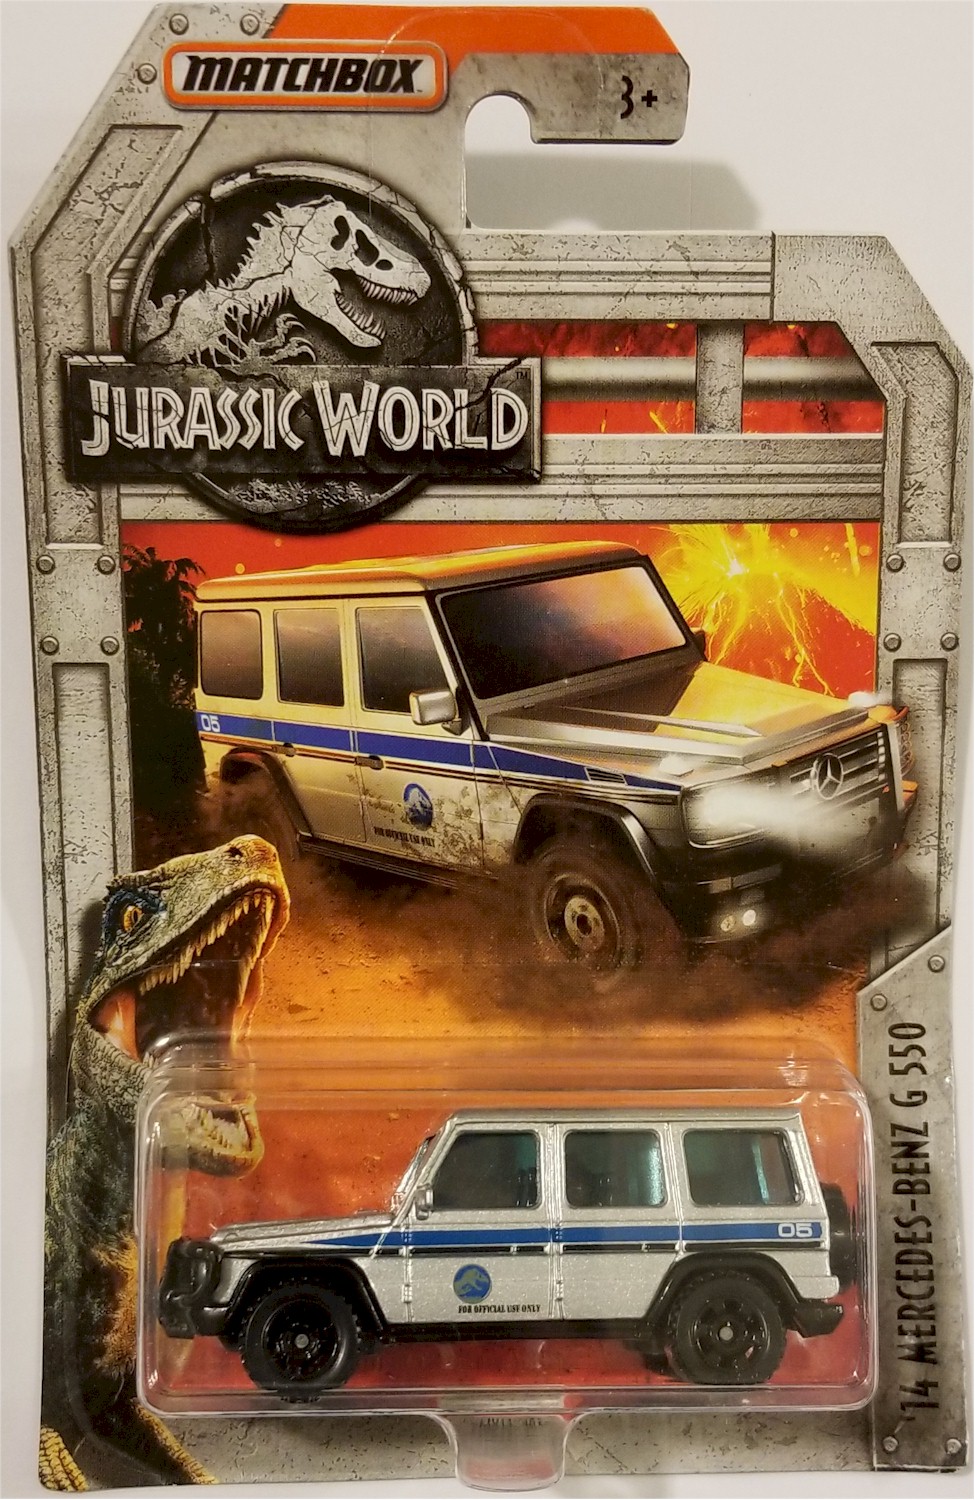 Jurassic World '14 Mercedes-Benz G 550 JD6 Matchbox